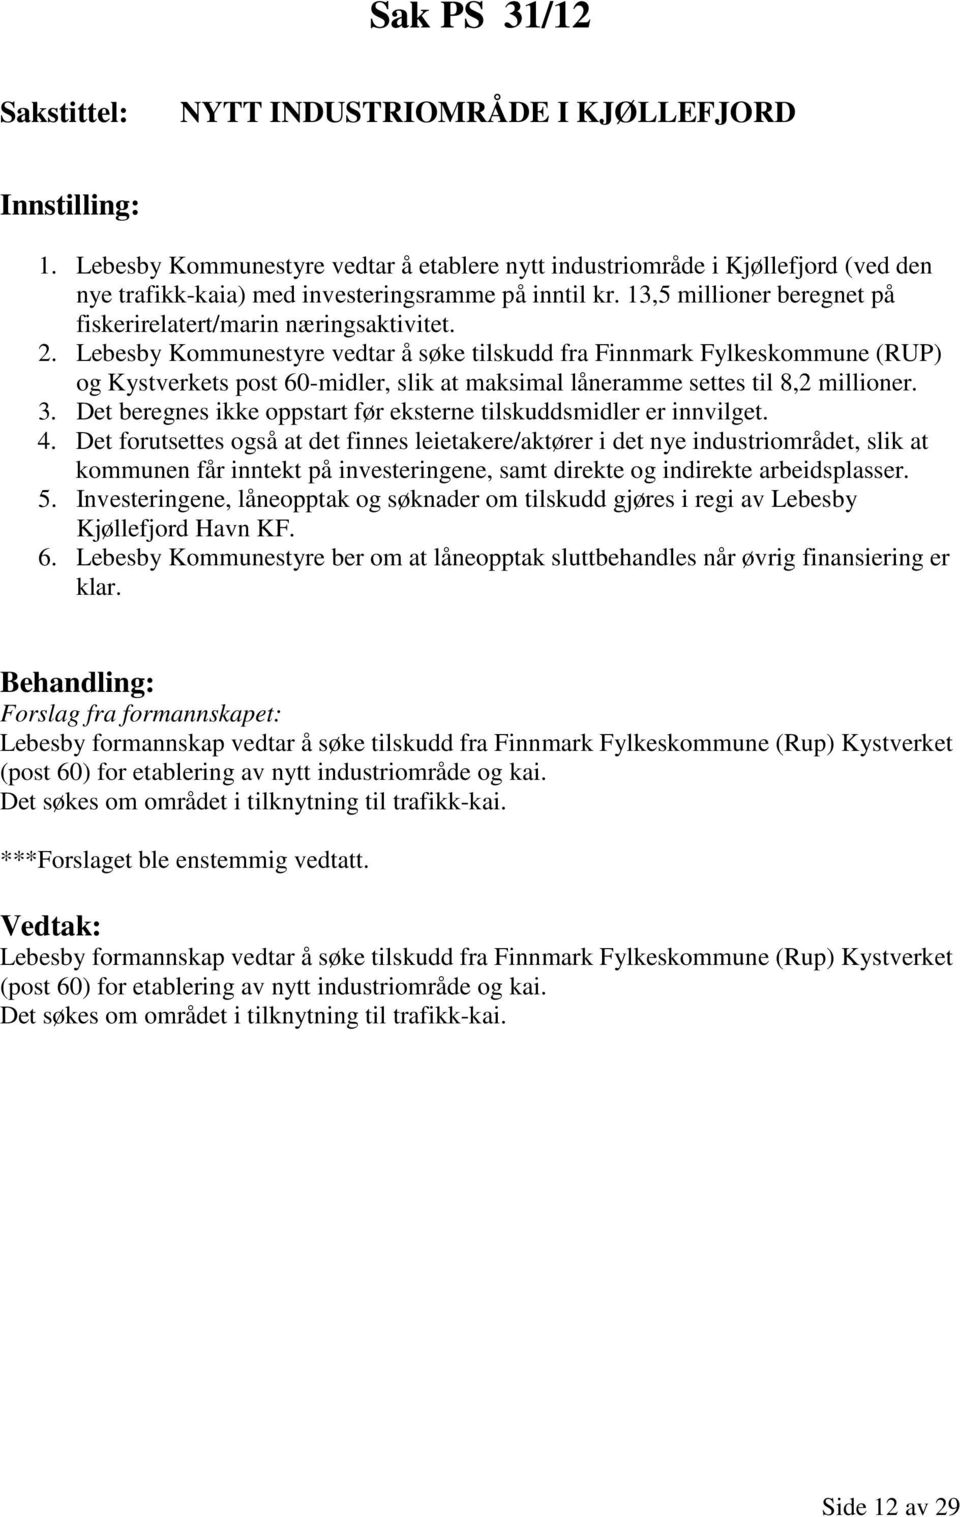 Lebesby Kommunestyre vedtar å søke tilskudd fra Finnmark Fylkeskommune (RUP) og Kystverkets post 60-midler, slik at maksimal låneramme settes til 8,2 millioner. 3.